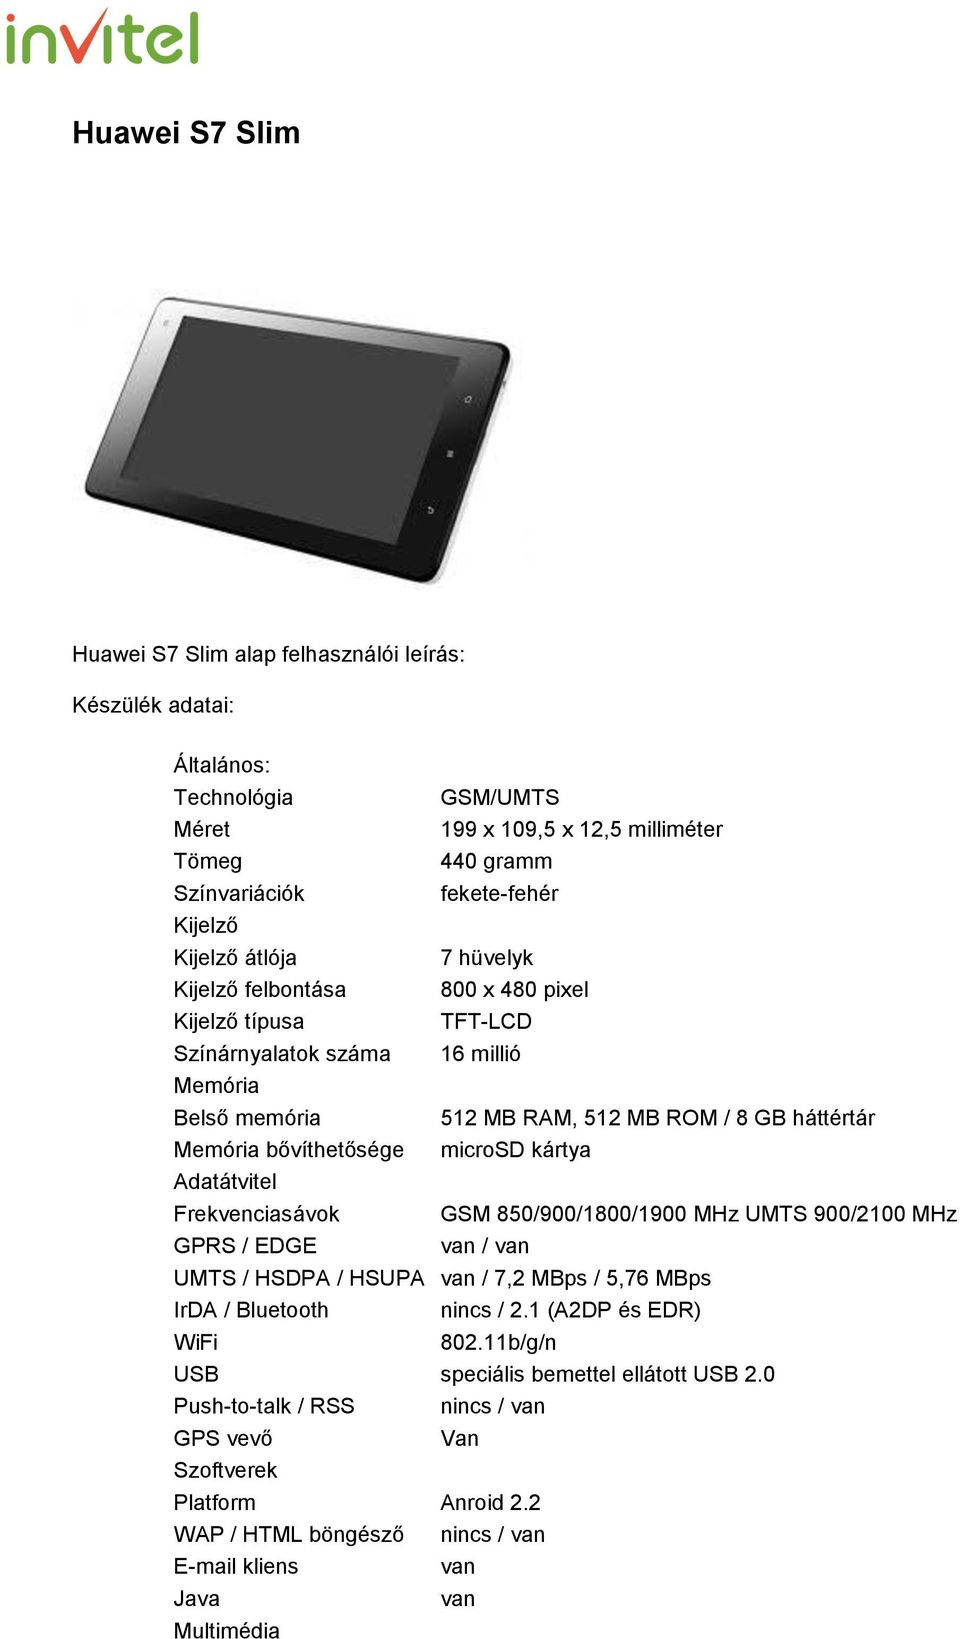 microsd kártya Adatátvitel Frekvenciasávok GSM 850/900/1800/1900 MHz UMTS 900/2100 MHz GPRS / EDGE van / van UMTS / HSDPA / HSUPA van / 7,2 MBps / 5,76 MBps IrDA / Bluetooth nincs / 2.